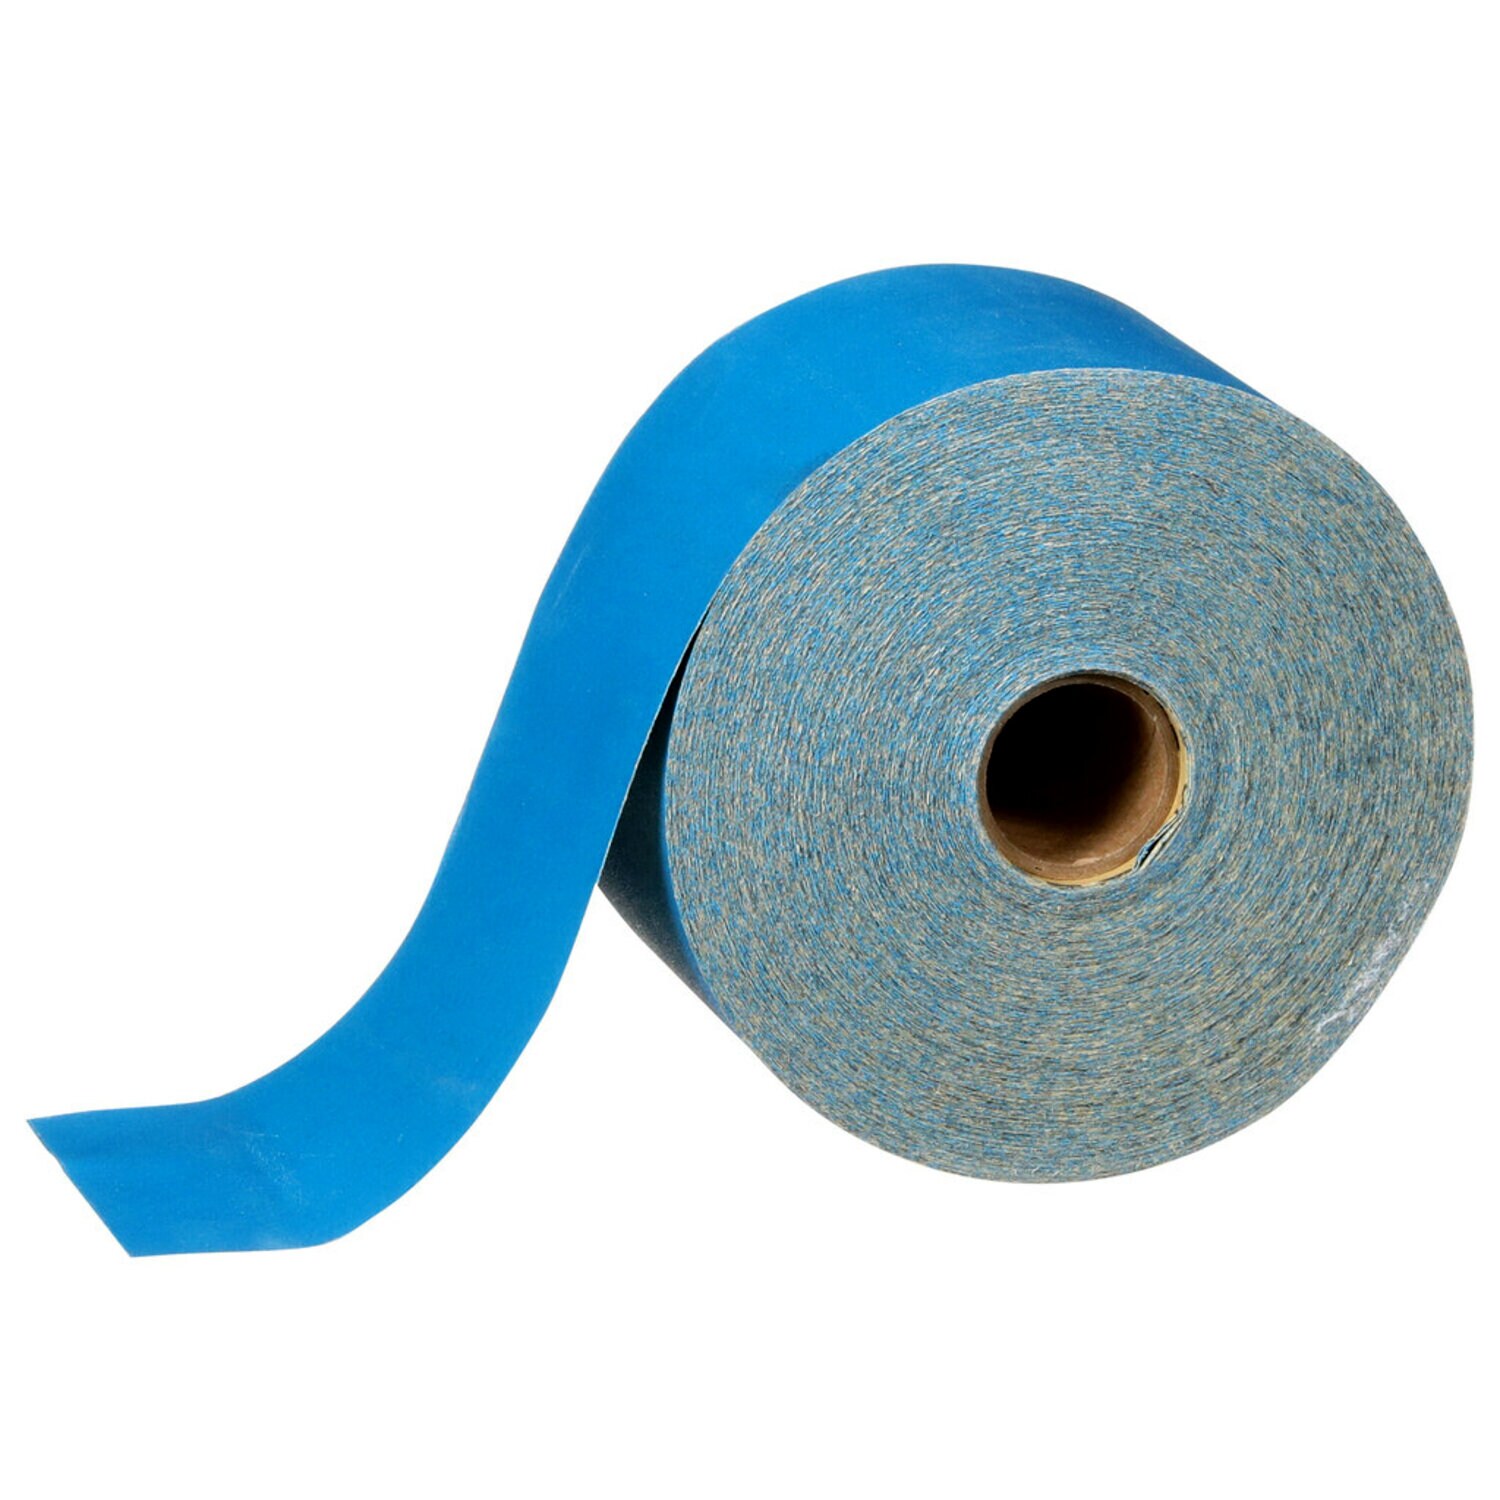 7100216685 - 3M Stikit Blue Abrasive Sheet Roll 321U, 36225, 320 grade, 2-3/4 in x 45 yd, 5 rolls per case